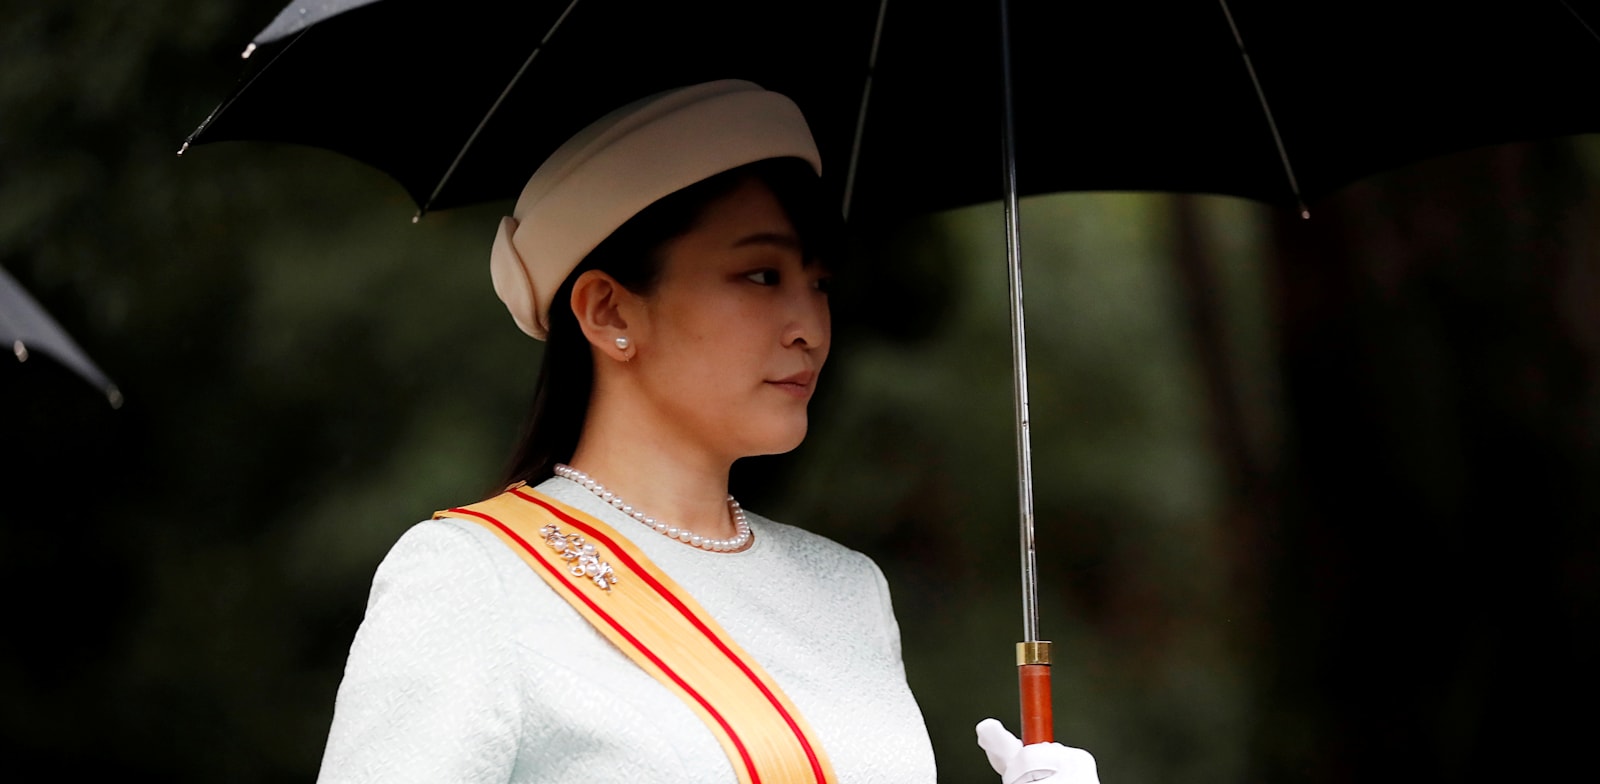 הנסיכה מאקו. גם בתוך המשפחה, עדיף לתעד באופן מסודר העברות כספיות / צילום: Reuters, KIM HONG-JI